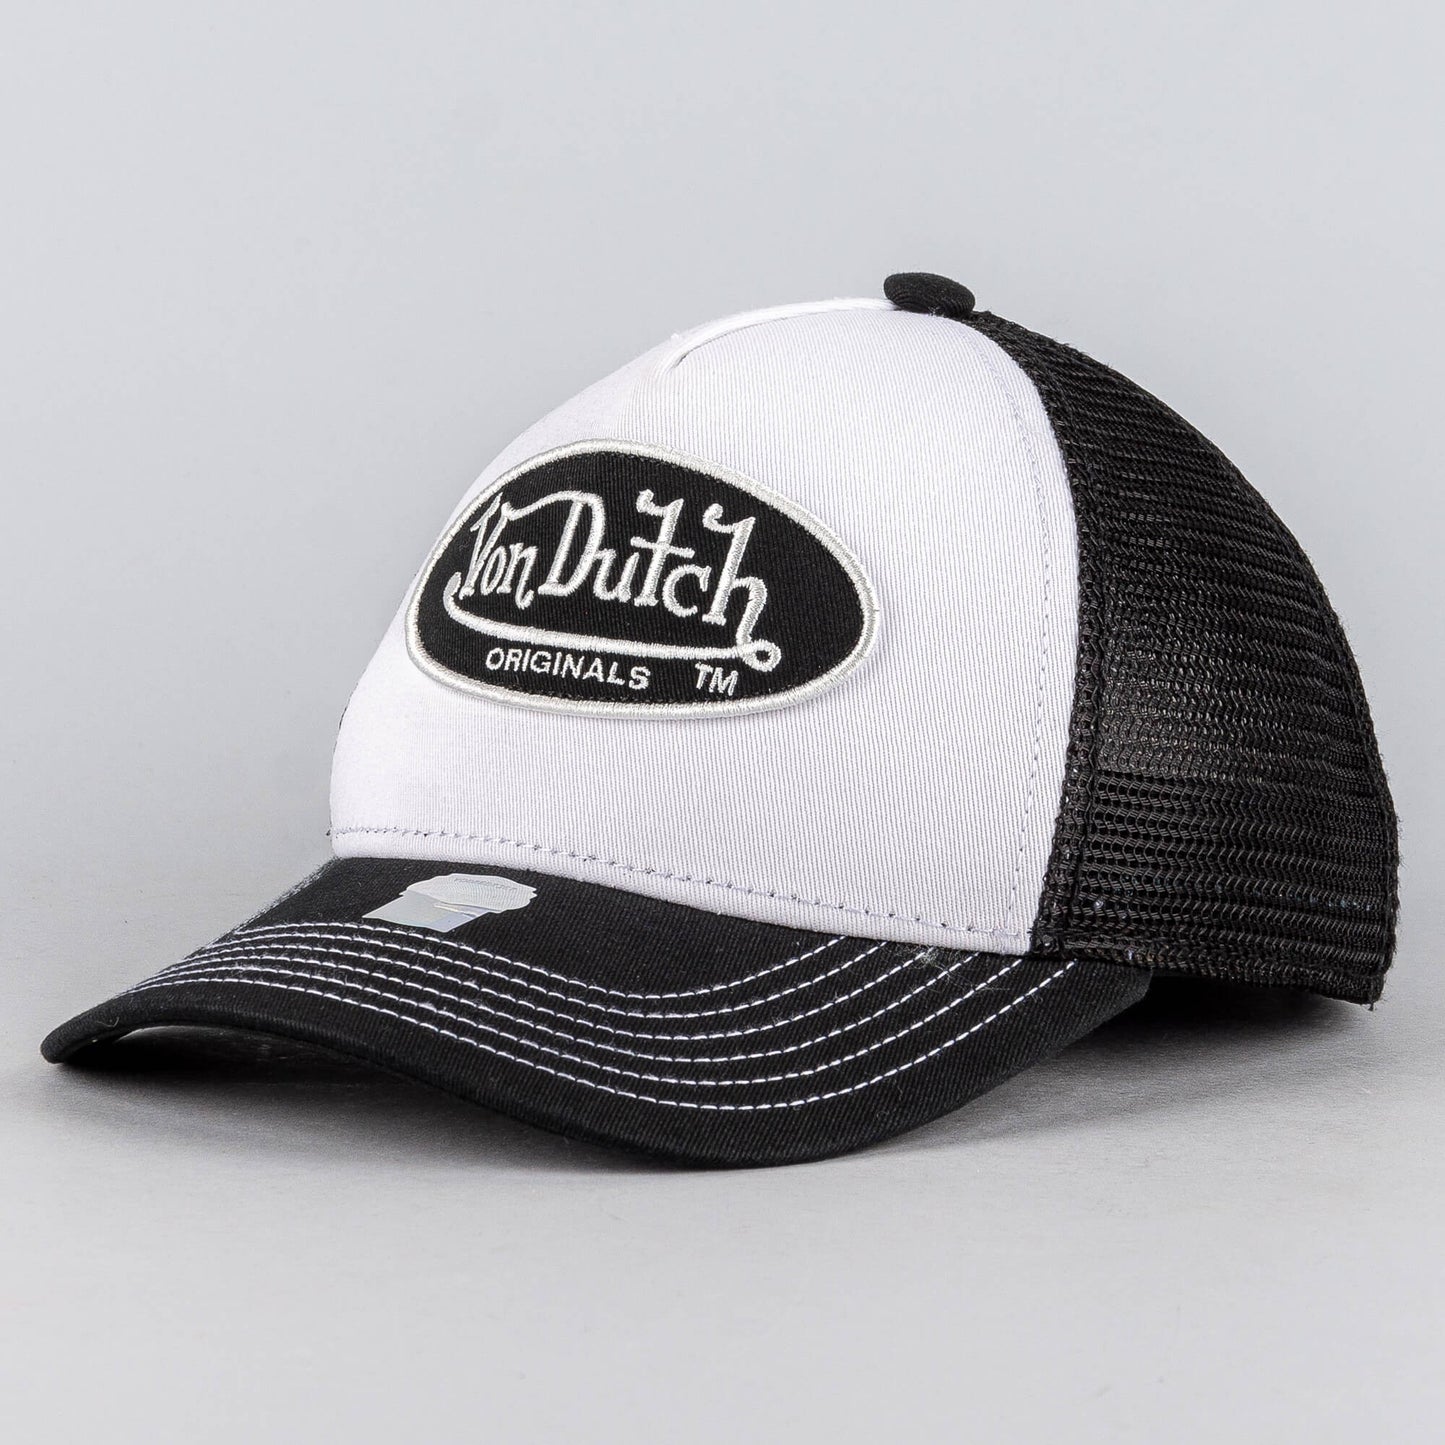 Von Dutch Originals Trucker Boston Oval Patch Cot/Twi White/Black